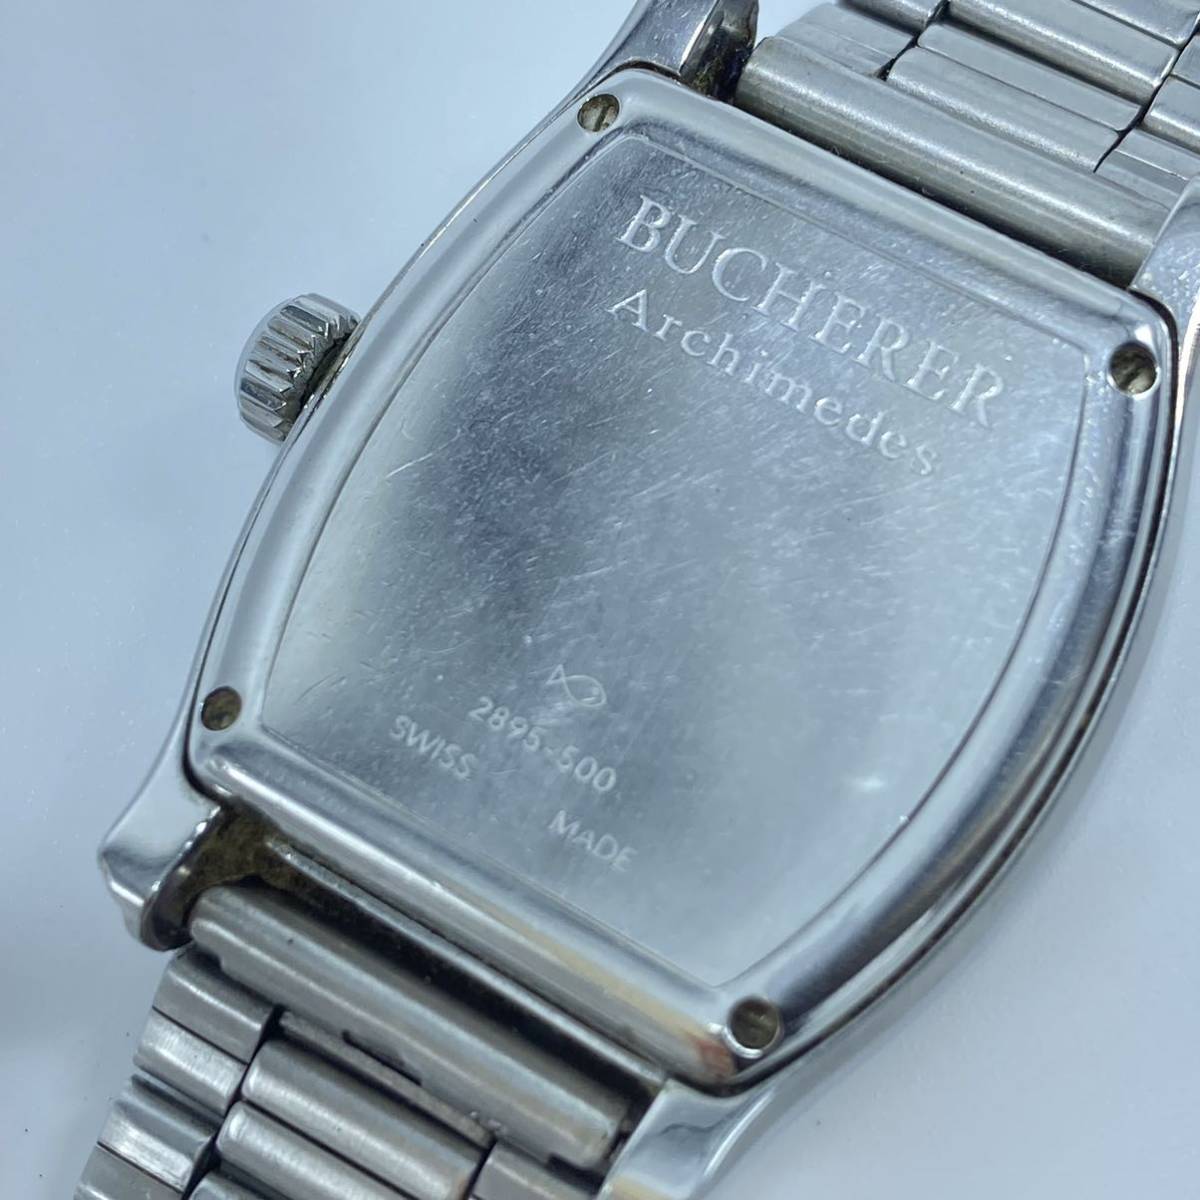 BUCHERER ブッフェラー Archimedes アルキメデス ブヘラ カール・F・ブヘラ 自動巻き オートマチック メンズ 腕時計 ブラック クロノグラフ_画像6